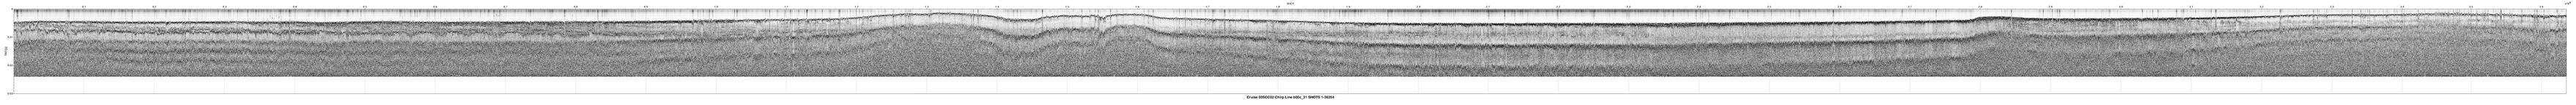 00SCC02 b00c_31 seismic profile image